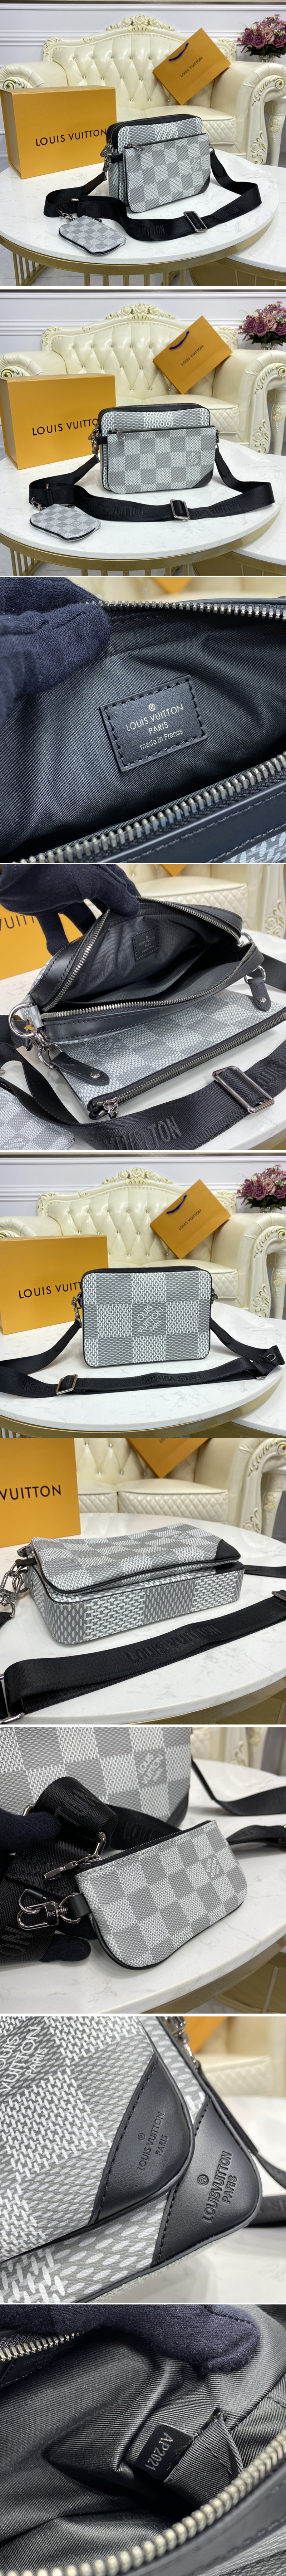 Replica Louis Vuitton N50017 LV Trio Messenger bag in White Damier Canvas